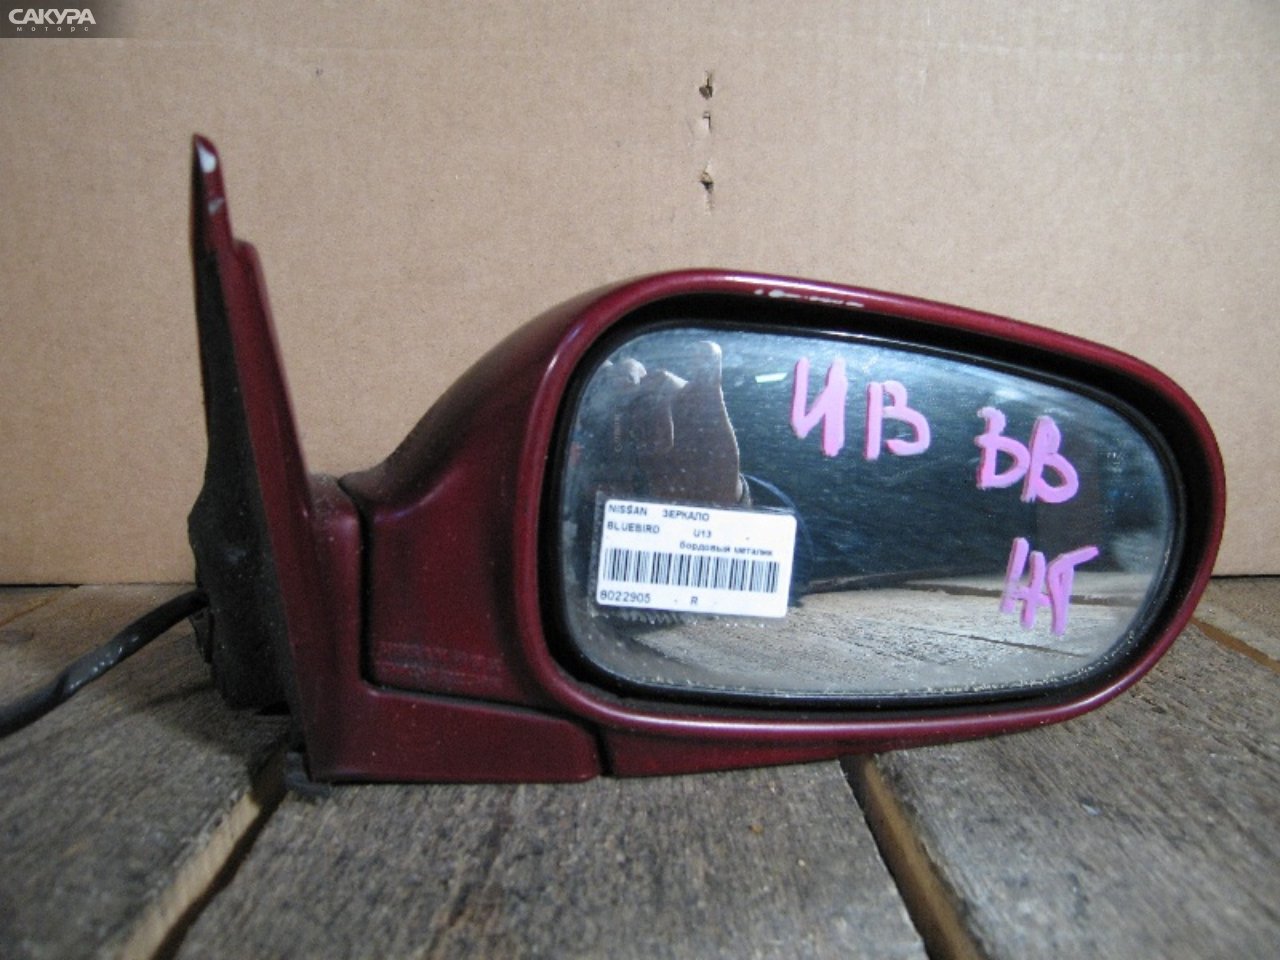 Зеркало боковое правое Nissan Bluebird U13: купить в Сакура Абакан.